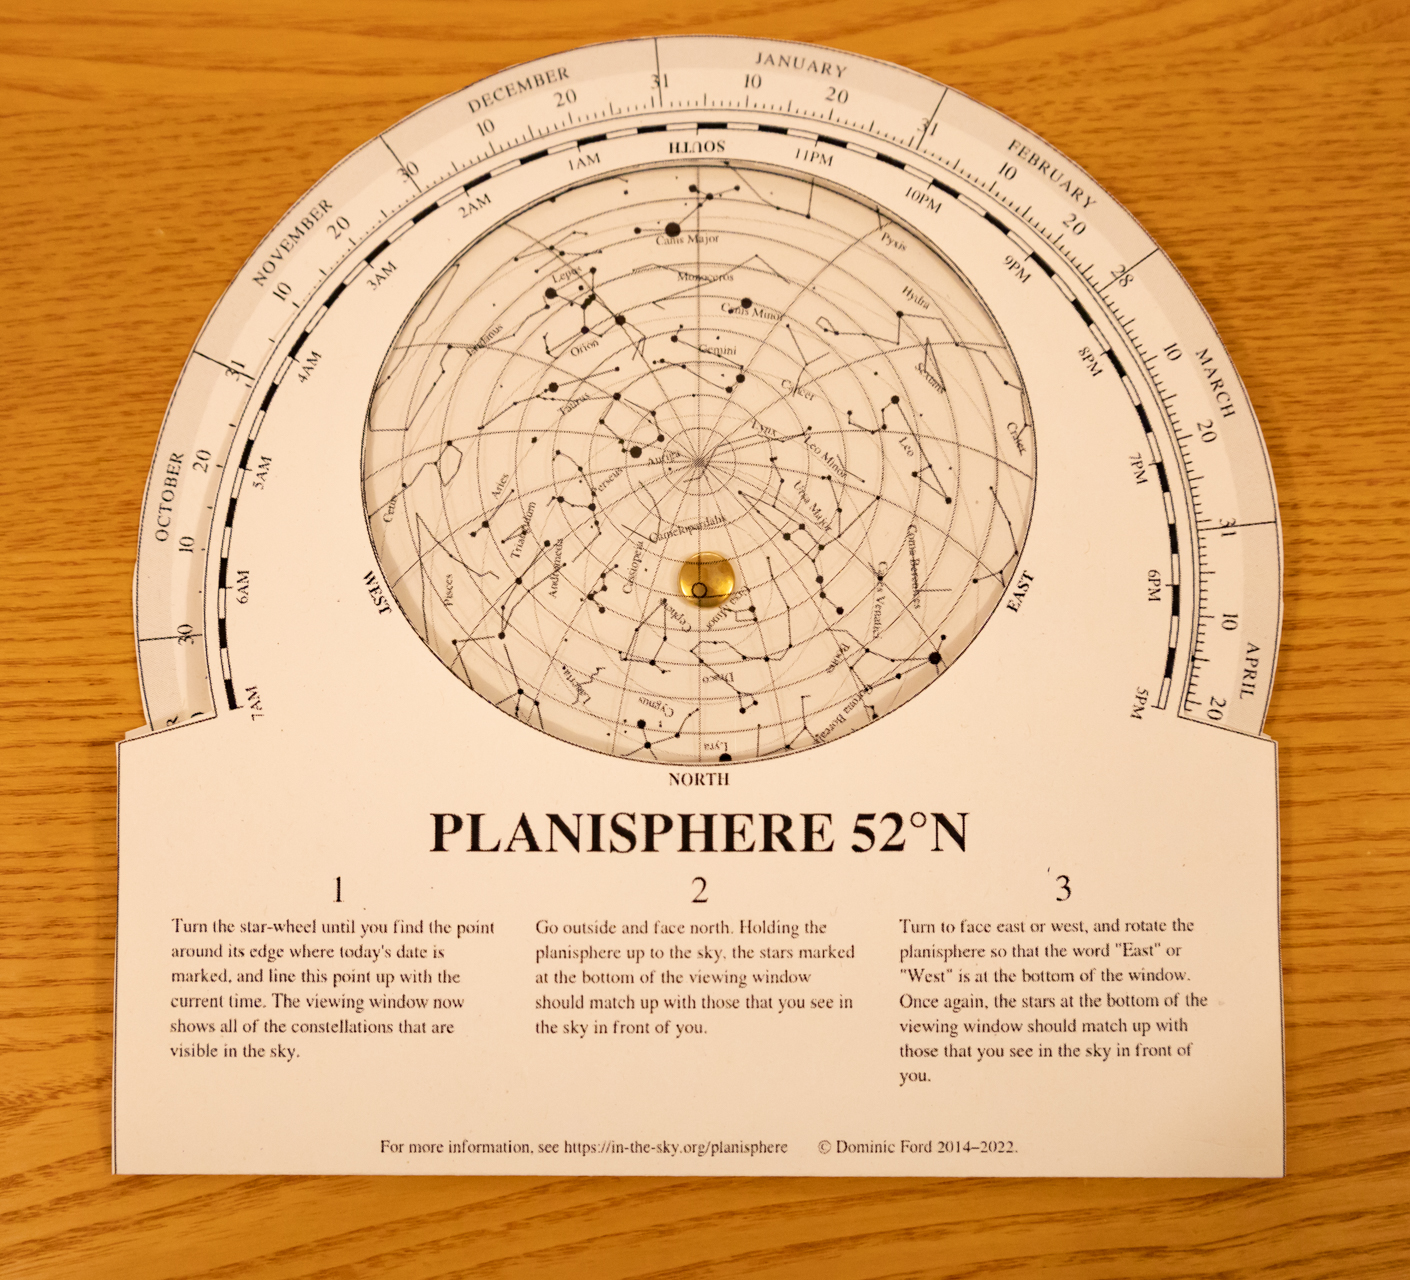 A model planisphere